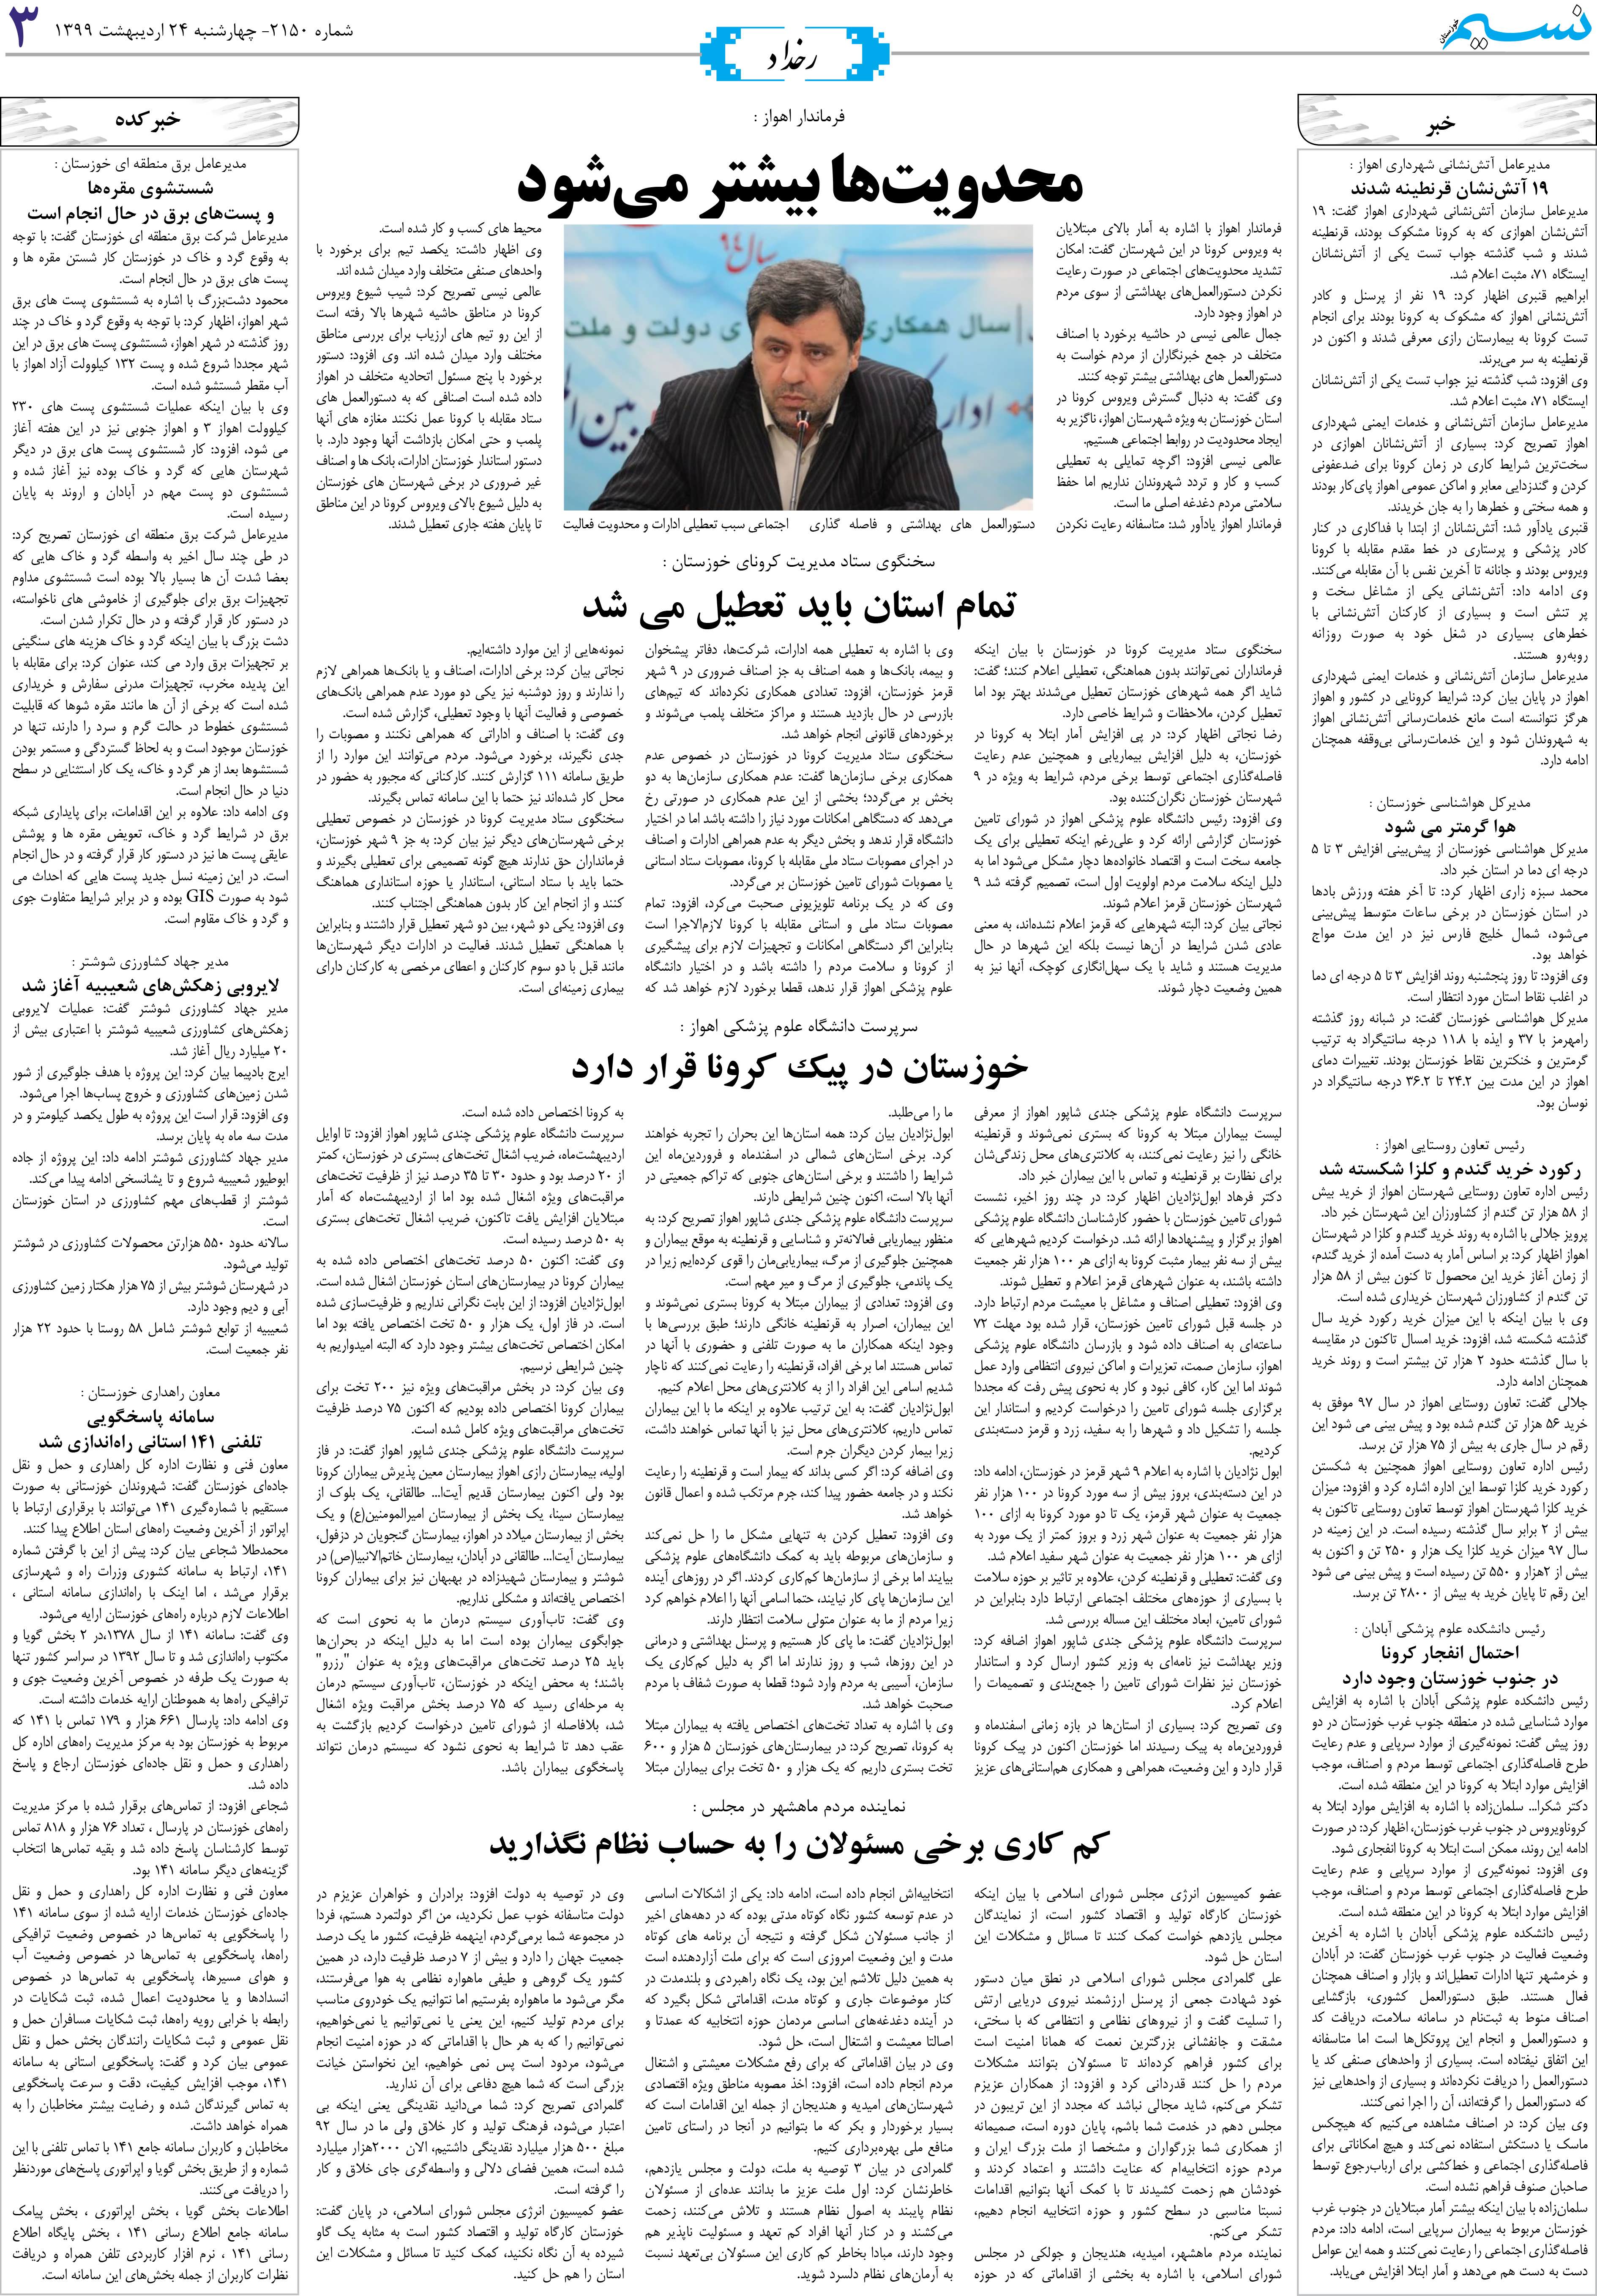 صفحه رخداد روزنامه نسیم شماره 2150